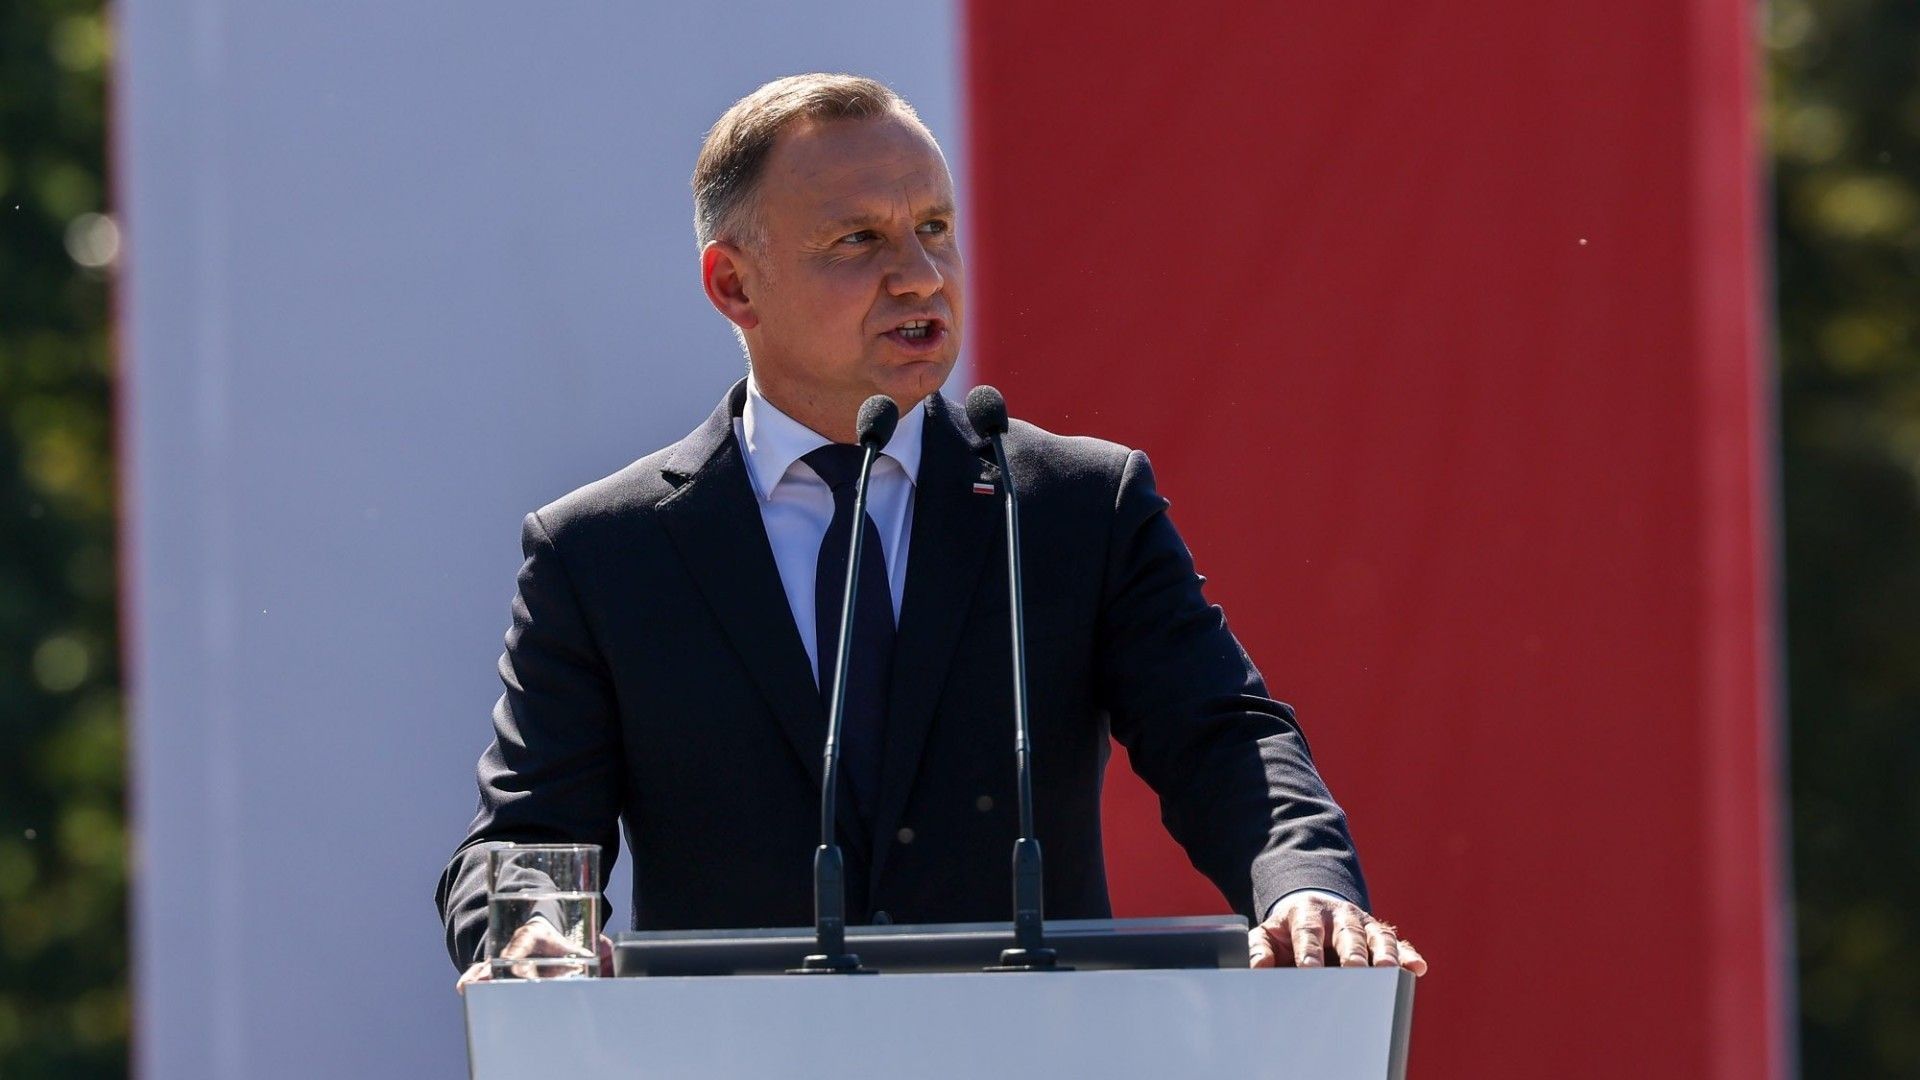 Polski prezydent wybiera się do Afryki [OPINION]